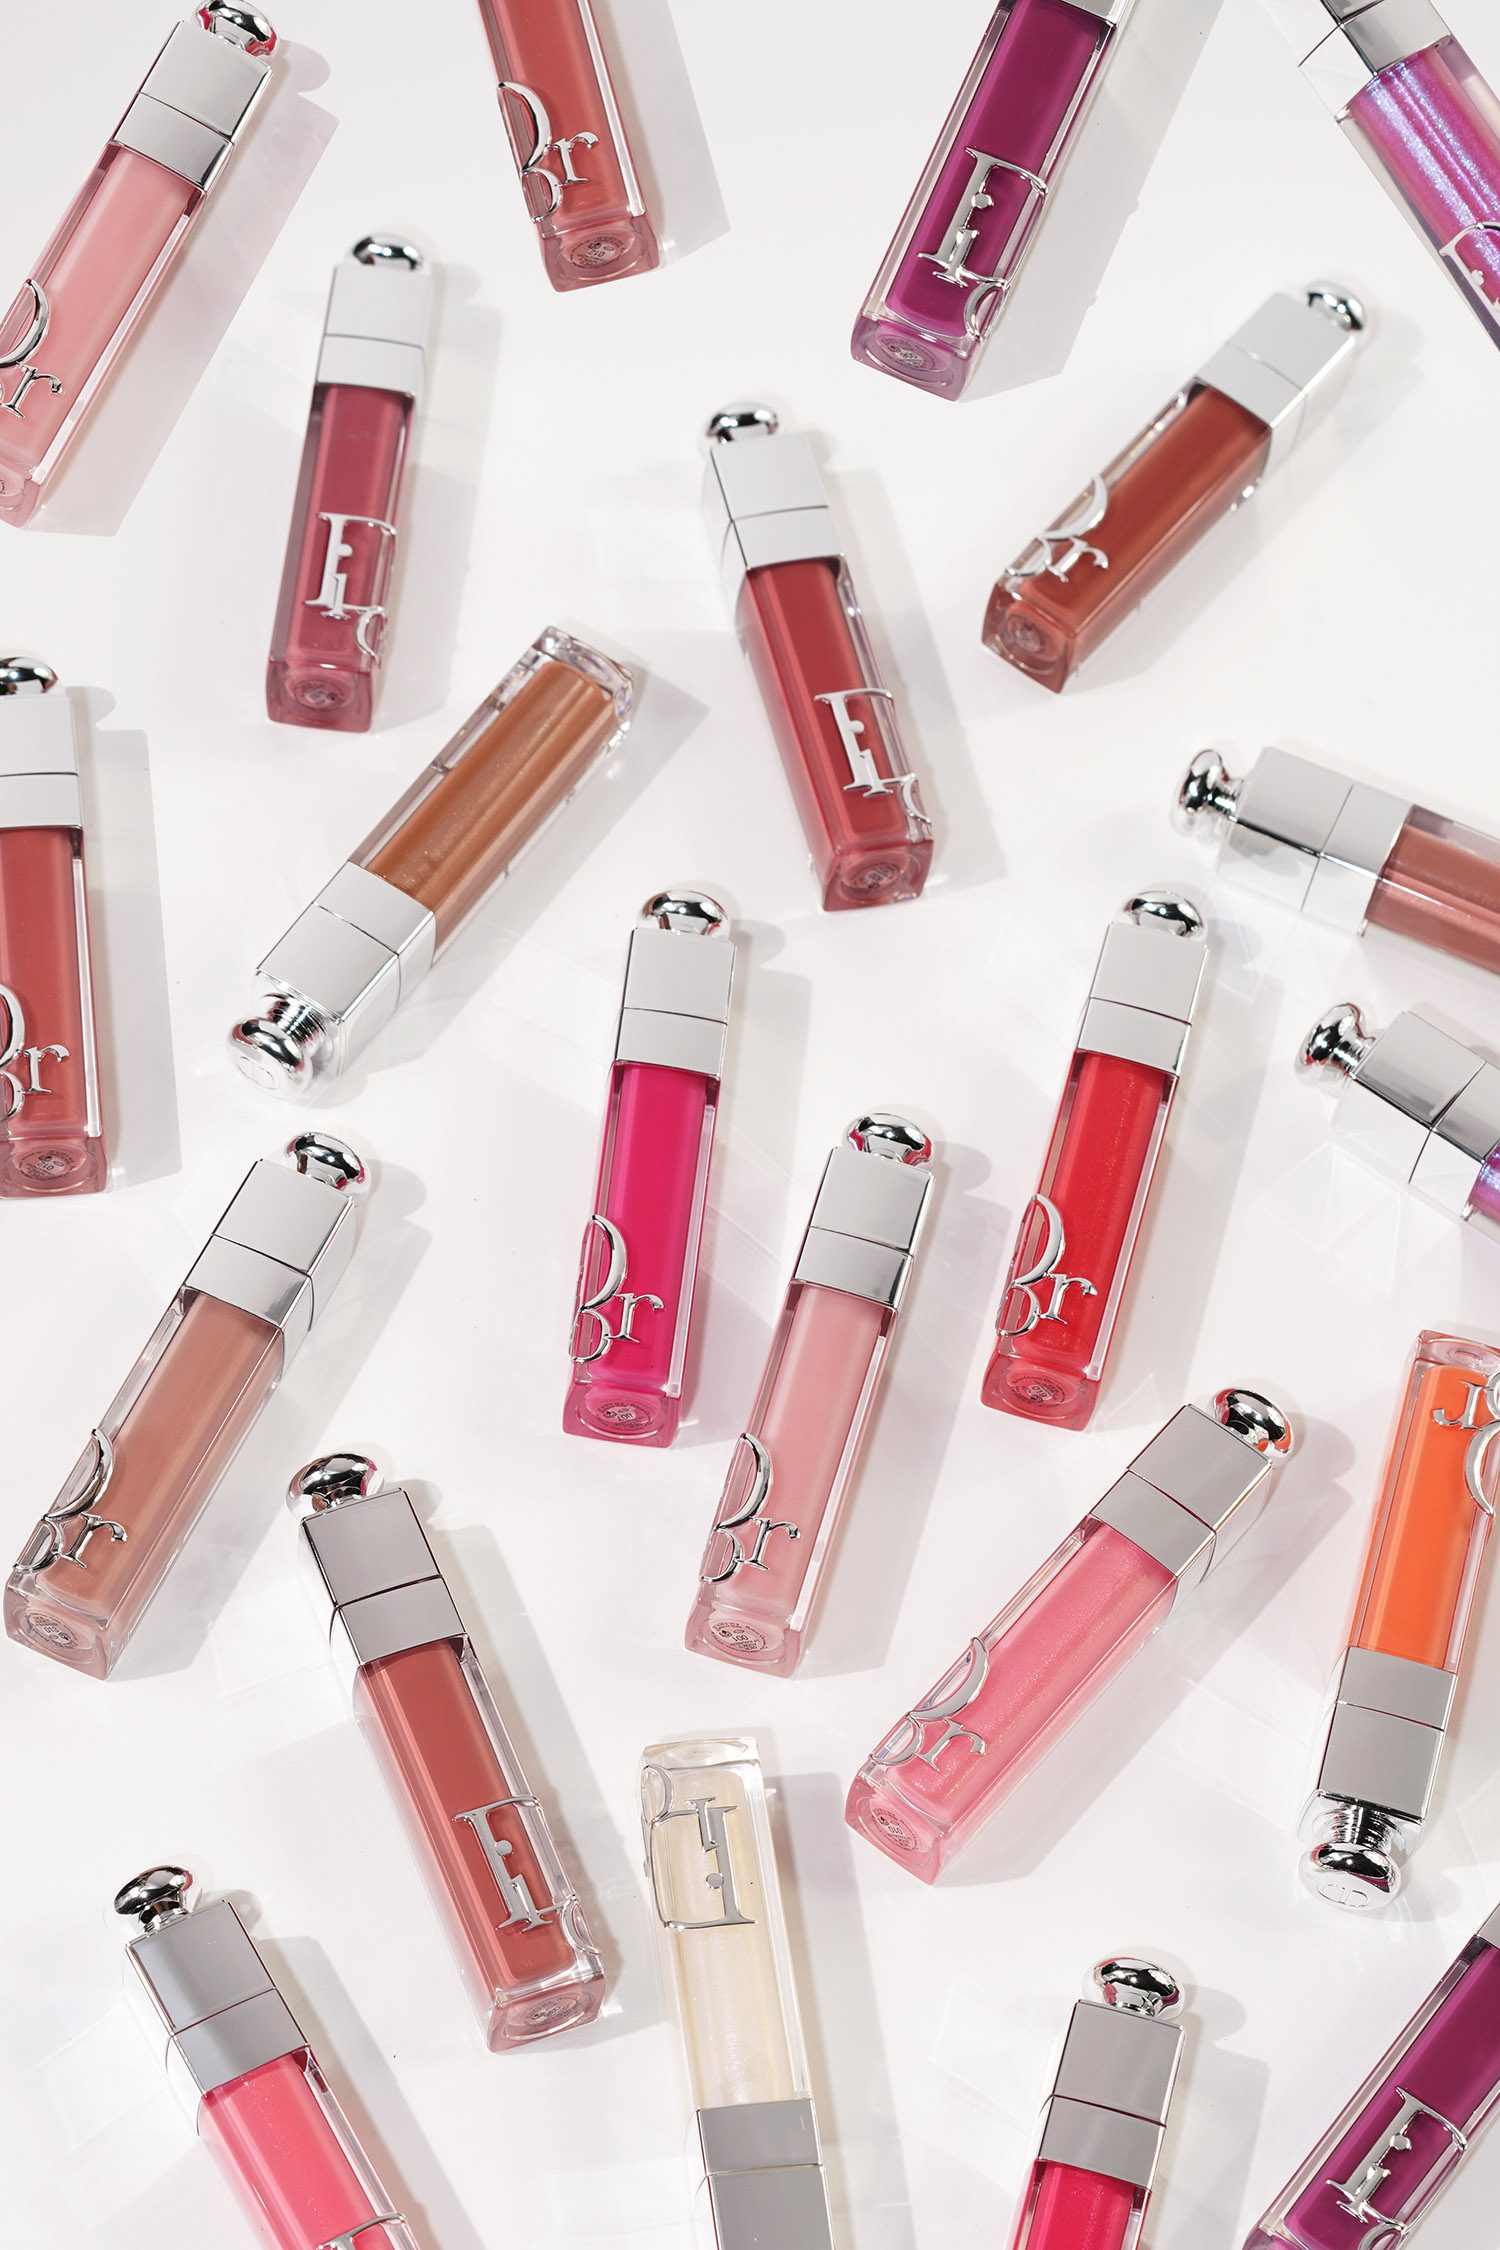 Dior Addict Beauty Maximizers The Book New Lip - – Colors Formula + Look